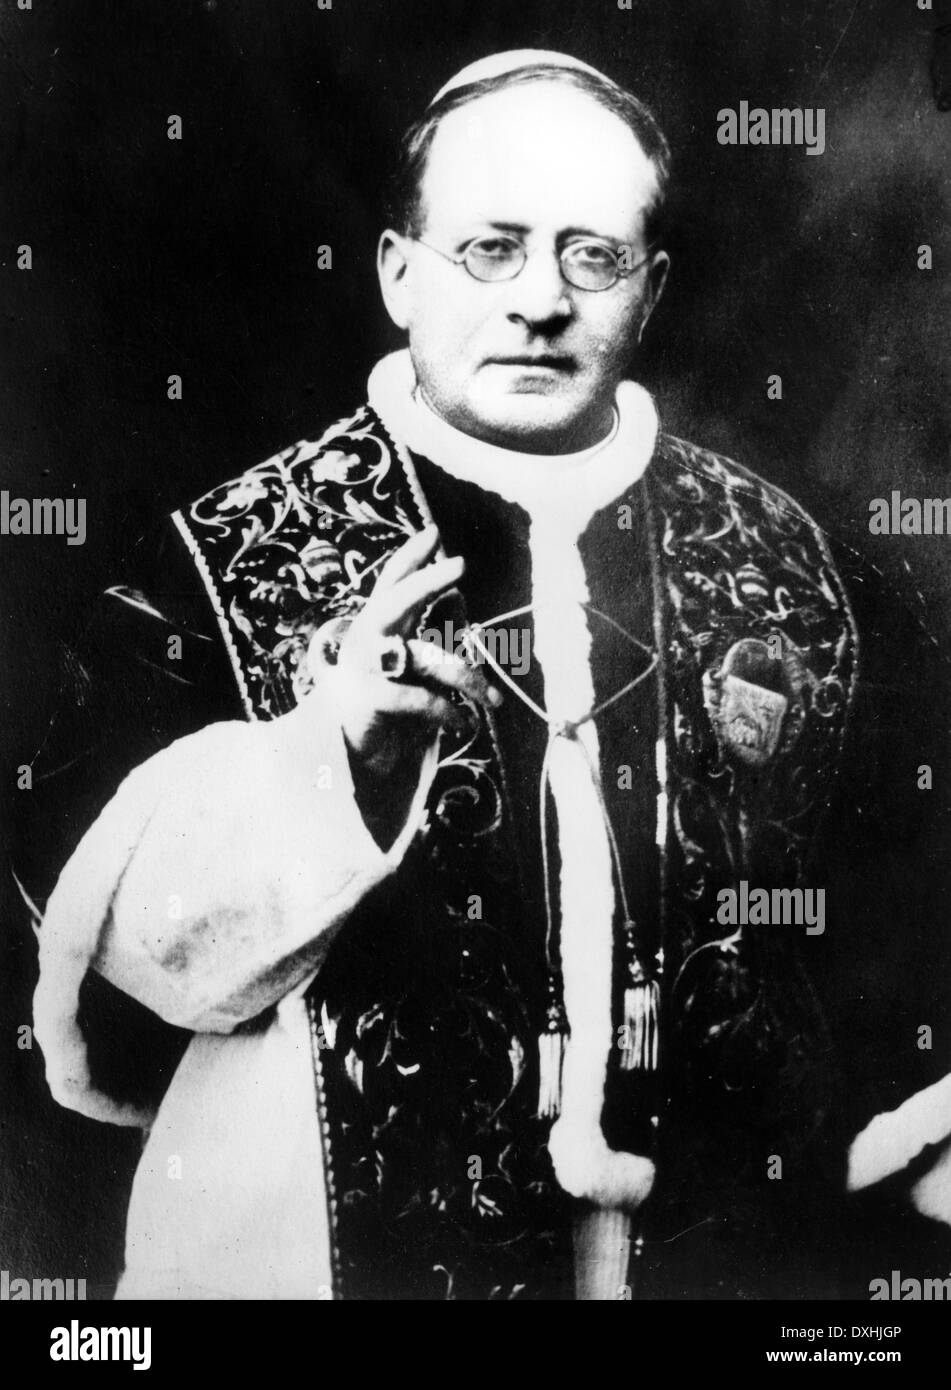 Le pape Pie XI (1857-1939) en 1930 Banque D'Images